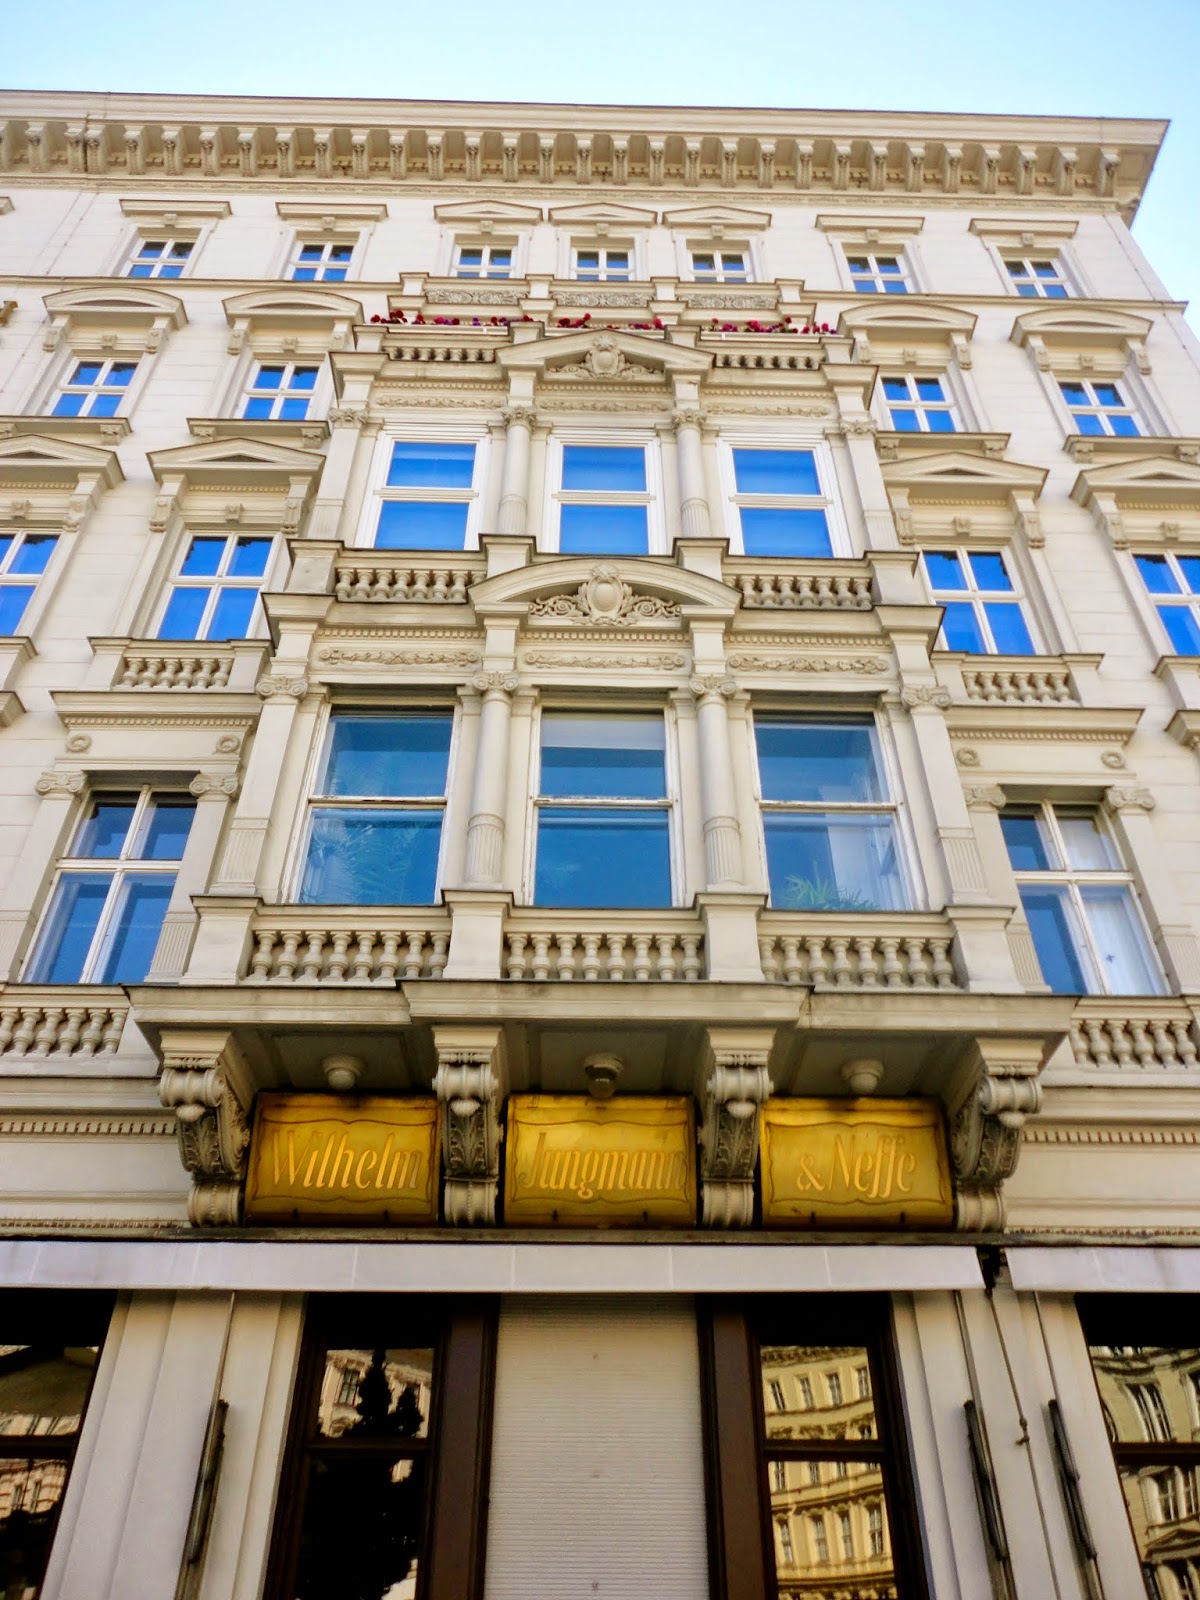 Building exterior, Vienna, Austria